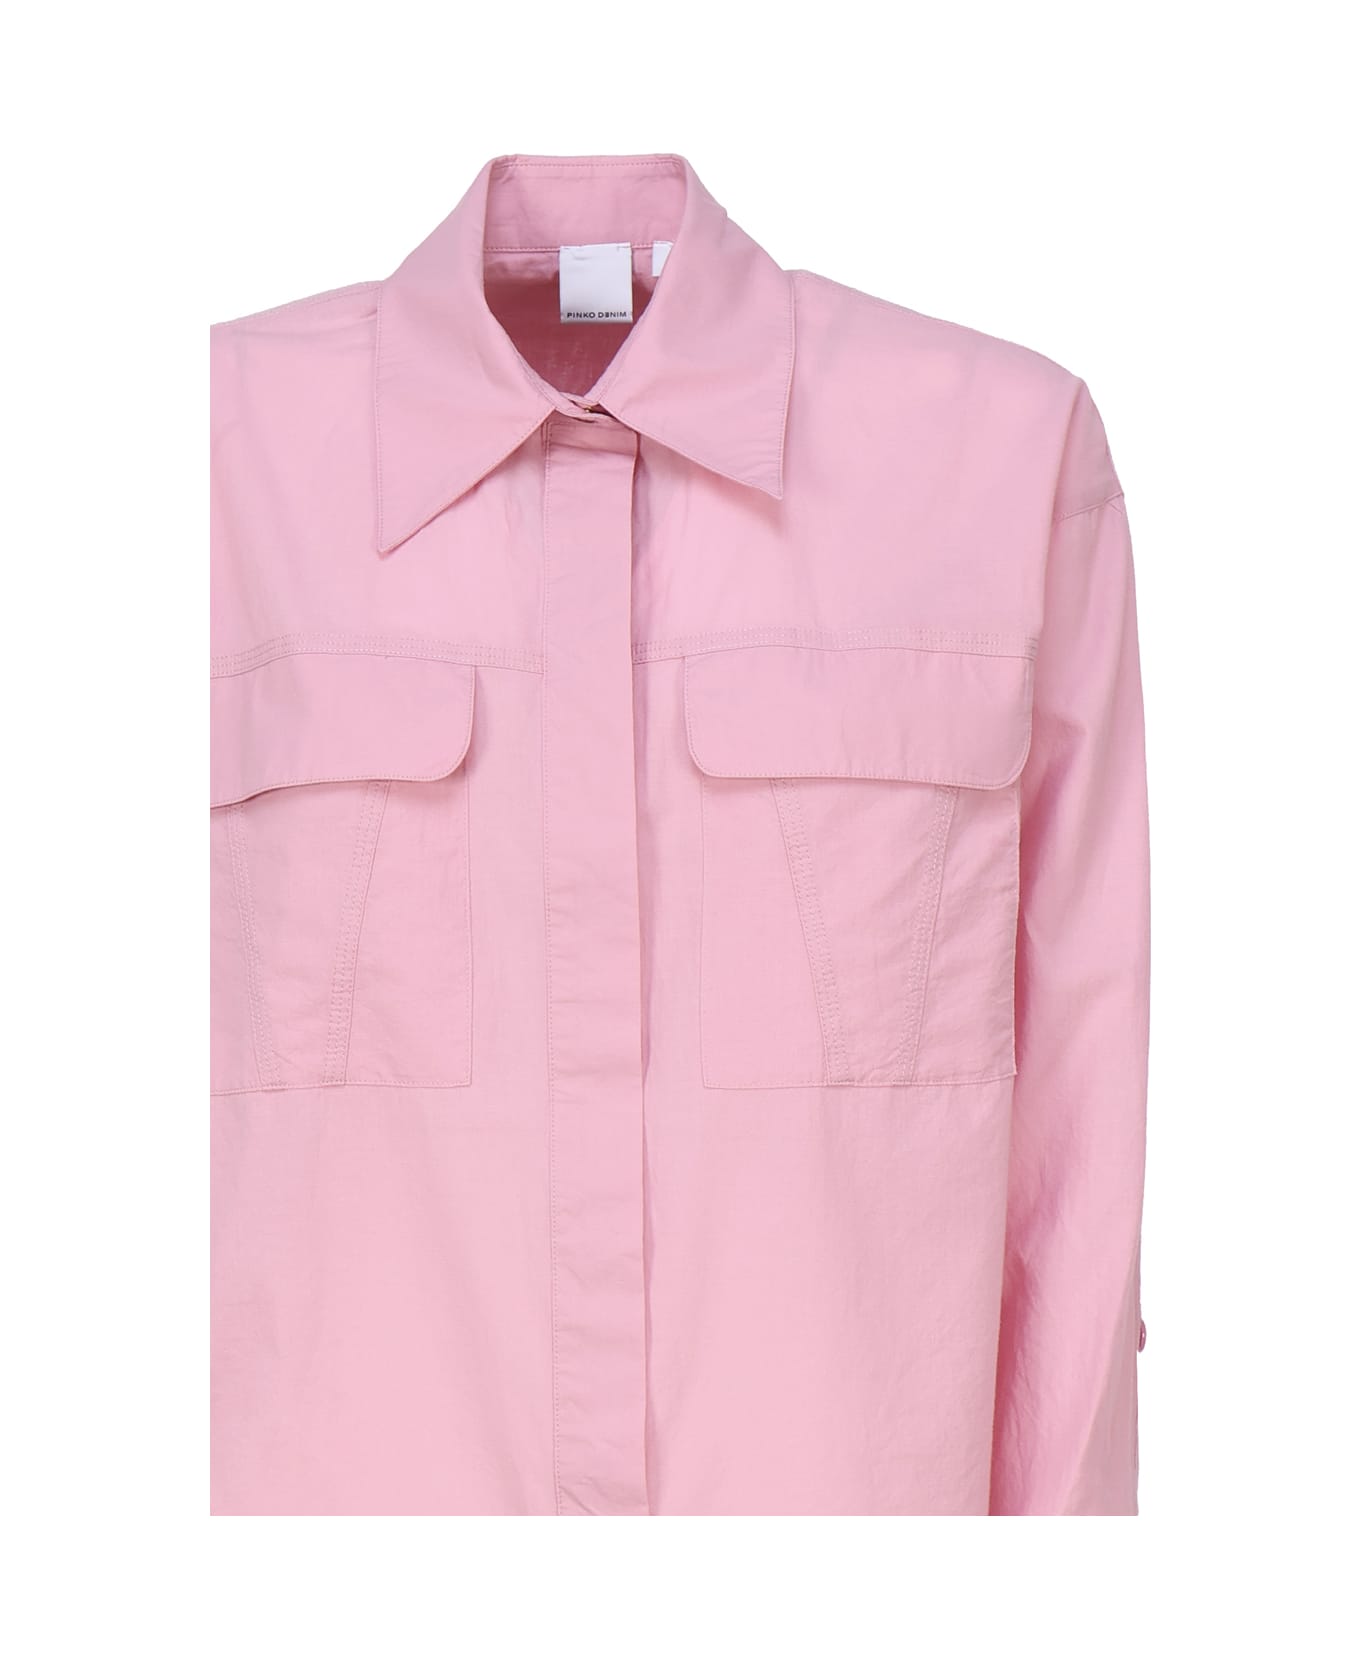 Pinko Cotton Shirt - Pink シャツ